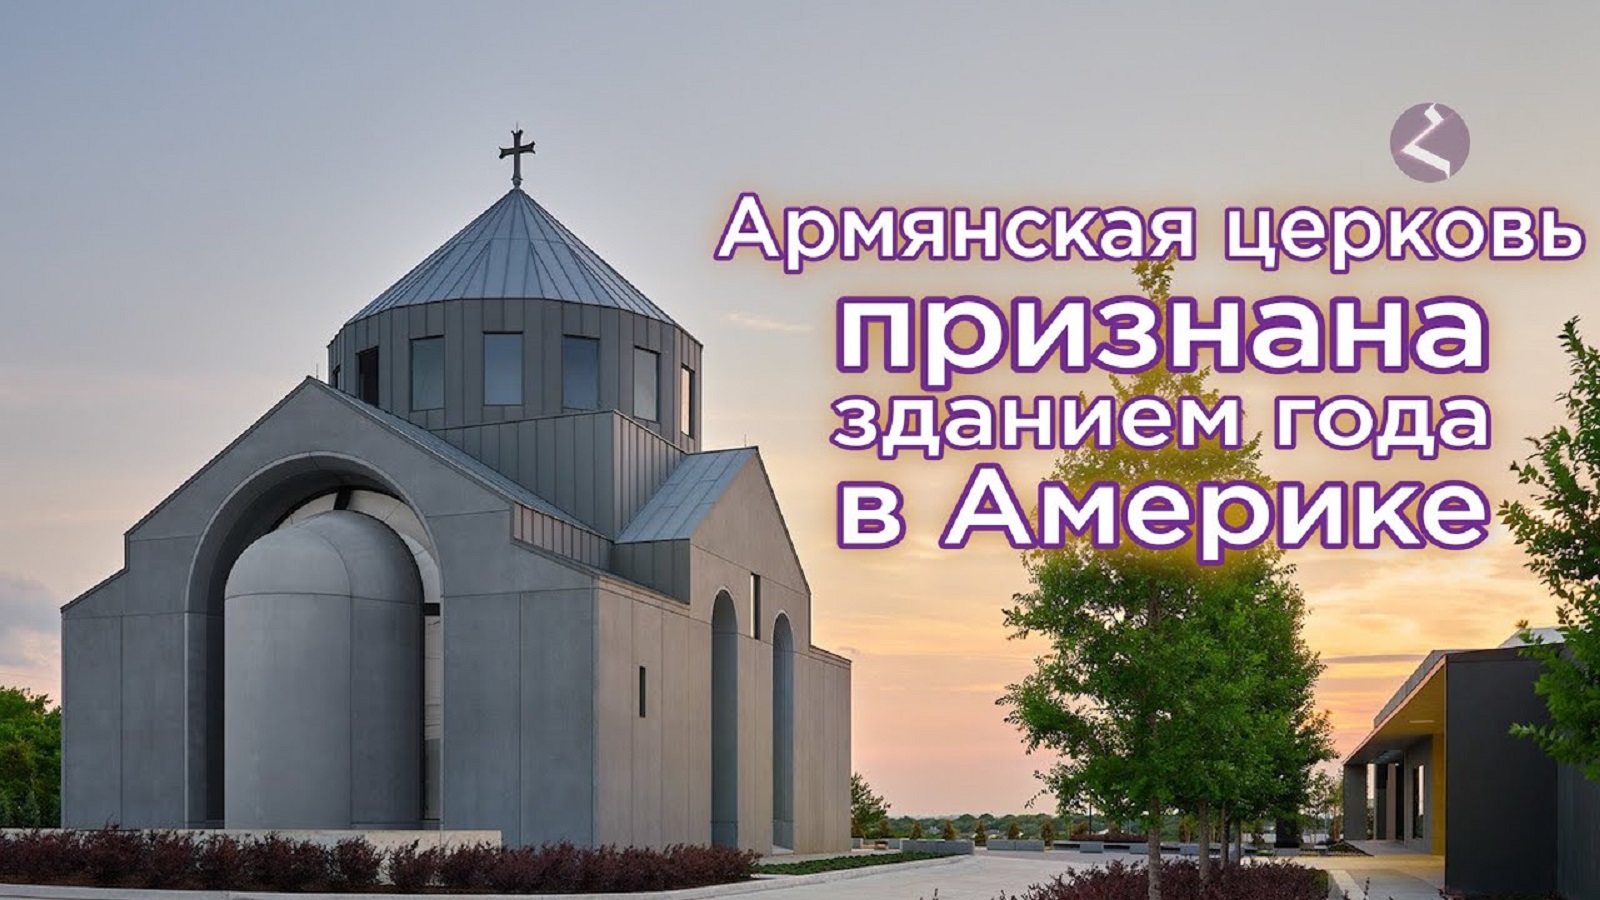 <strong class="">Армянская церковь в Техасе — здание года в США</strong>